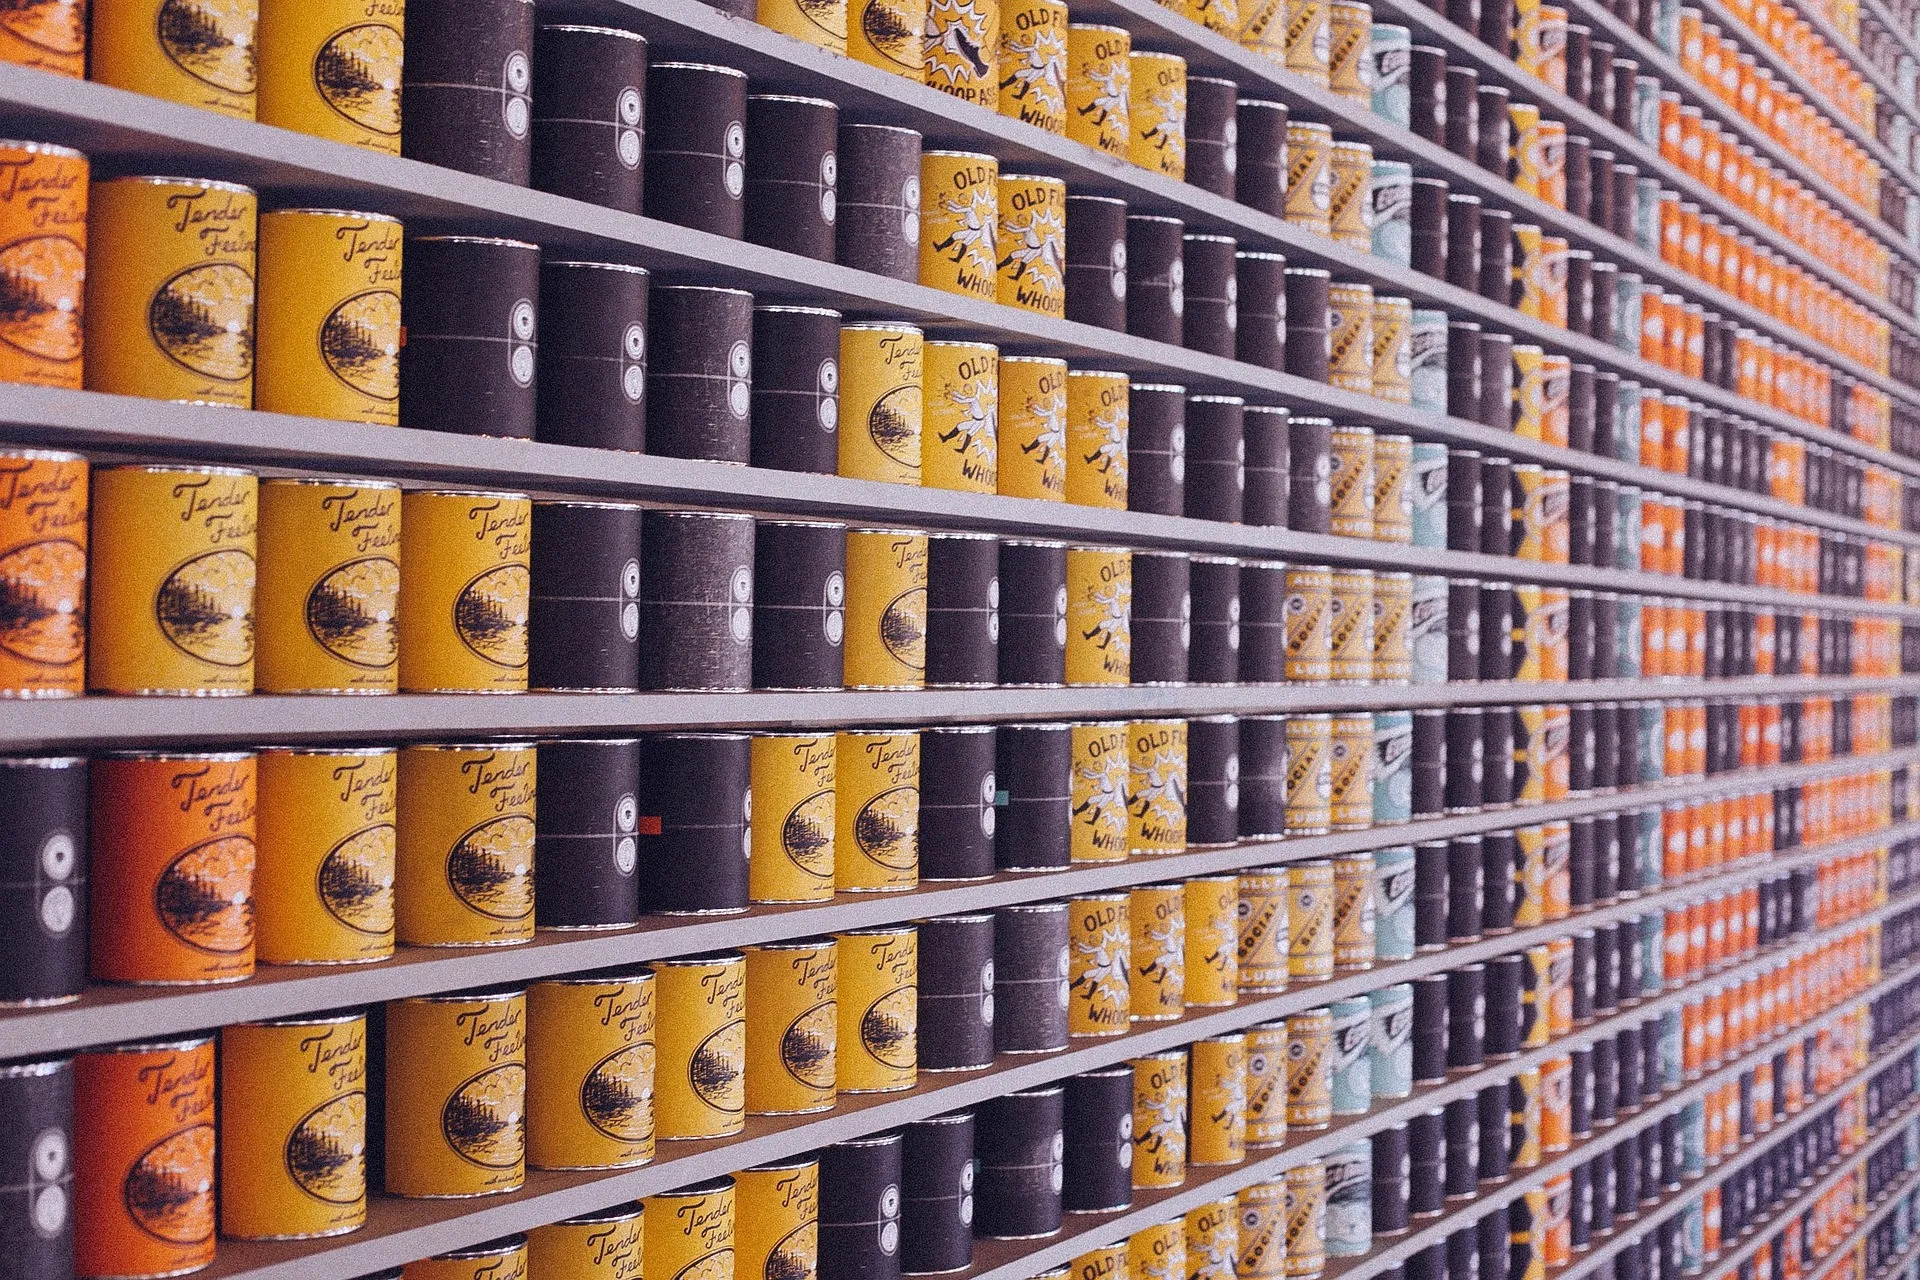 Advierten sobre venta de latas abolladas y productos vencidos en comercios de la capital